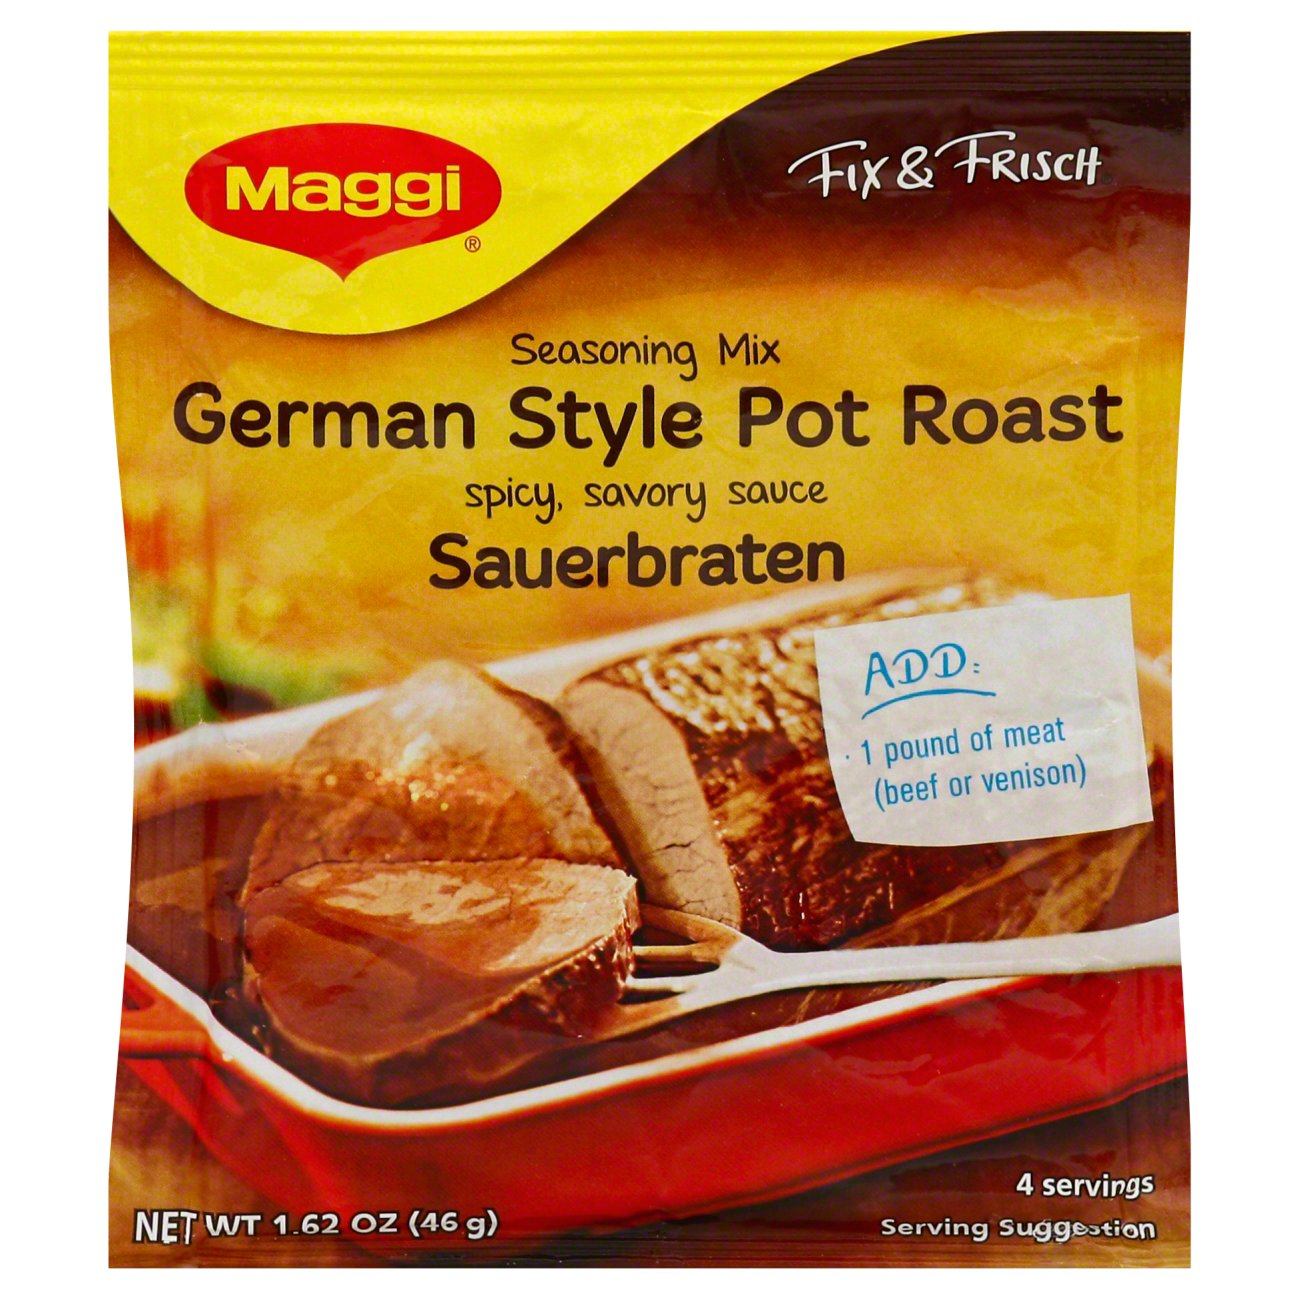 Maggi German Potato Dumpling Mix, Halb and Halb Boil in Bag, 6.8 oz.